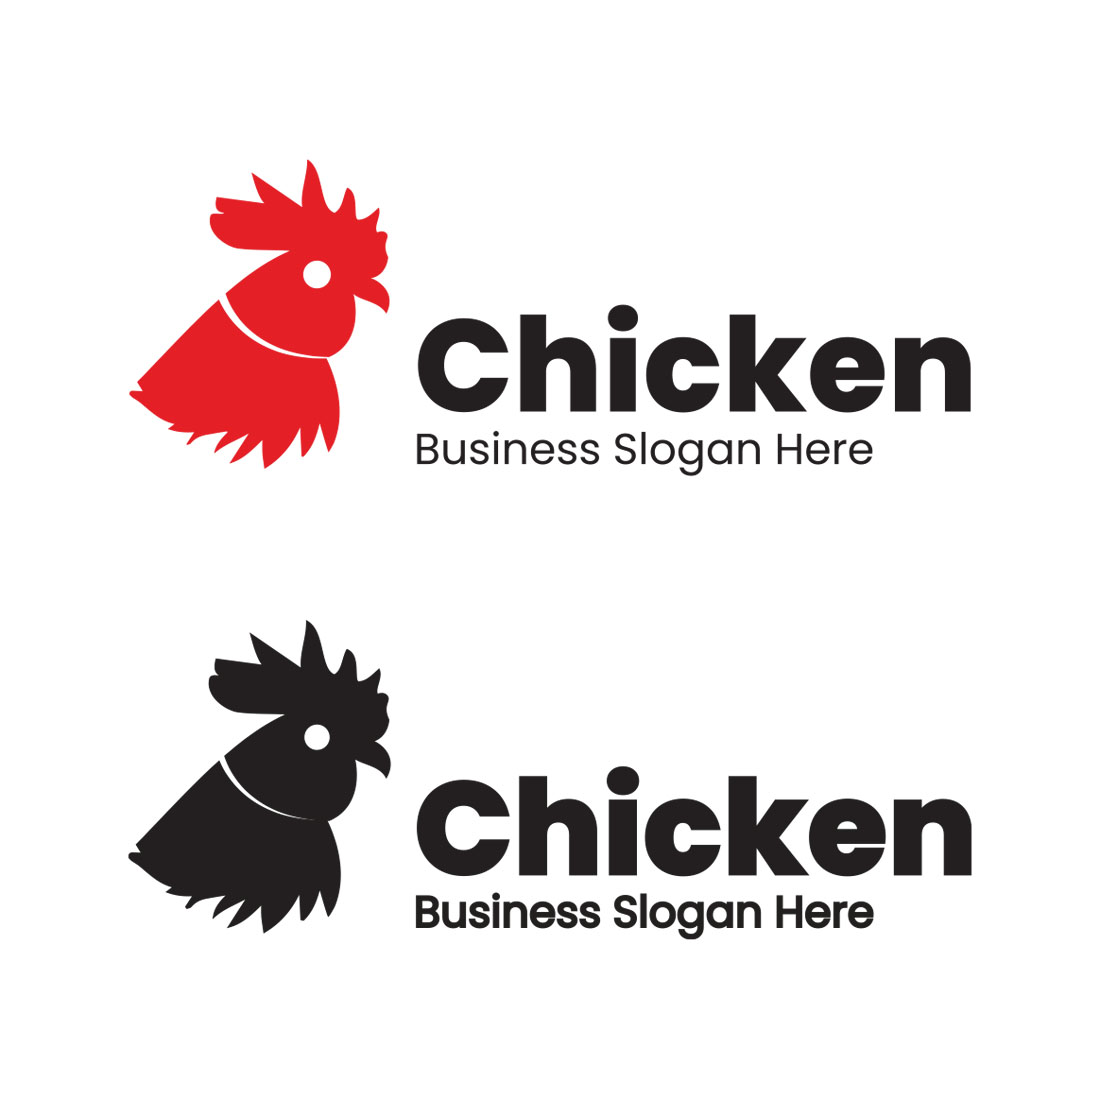 Chicken Logo Design Tempate cover image.